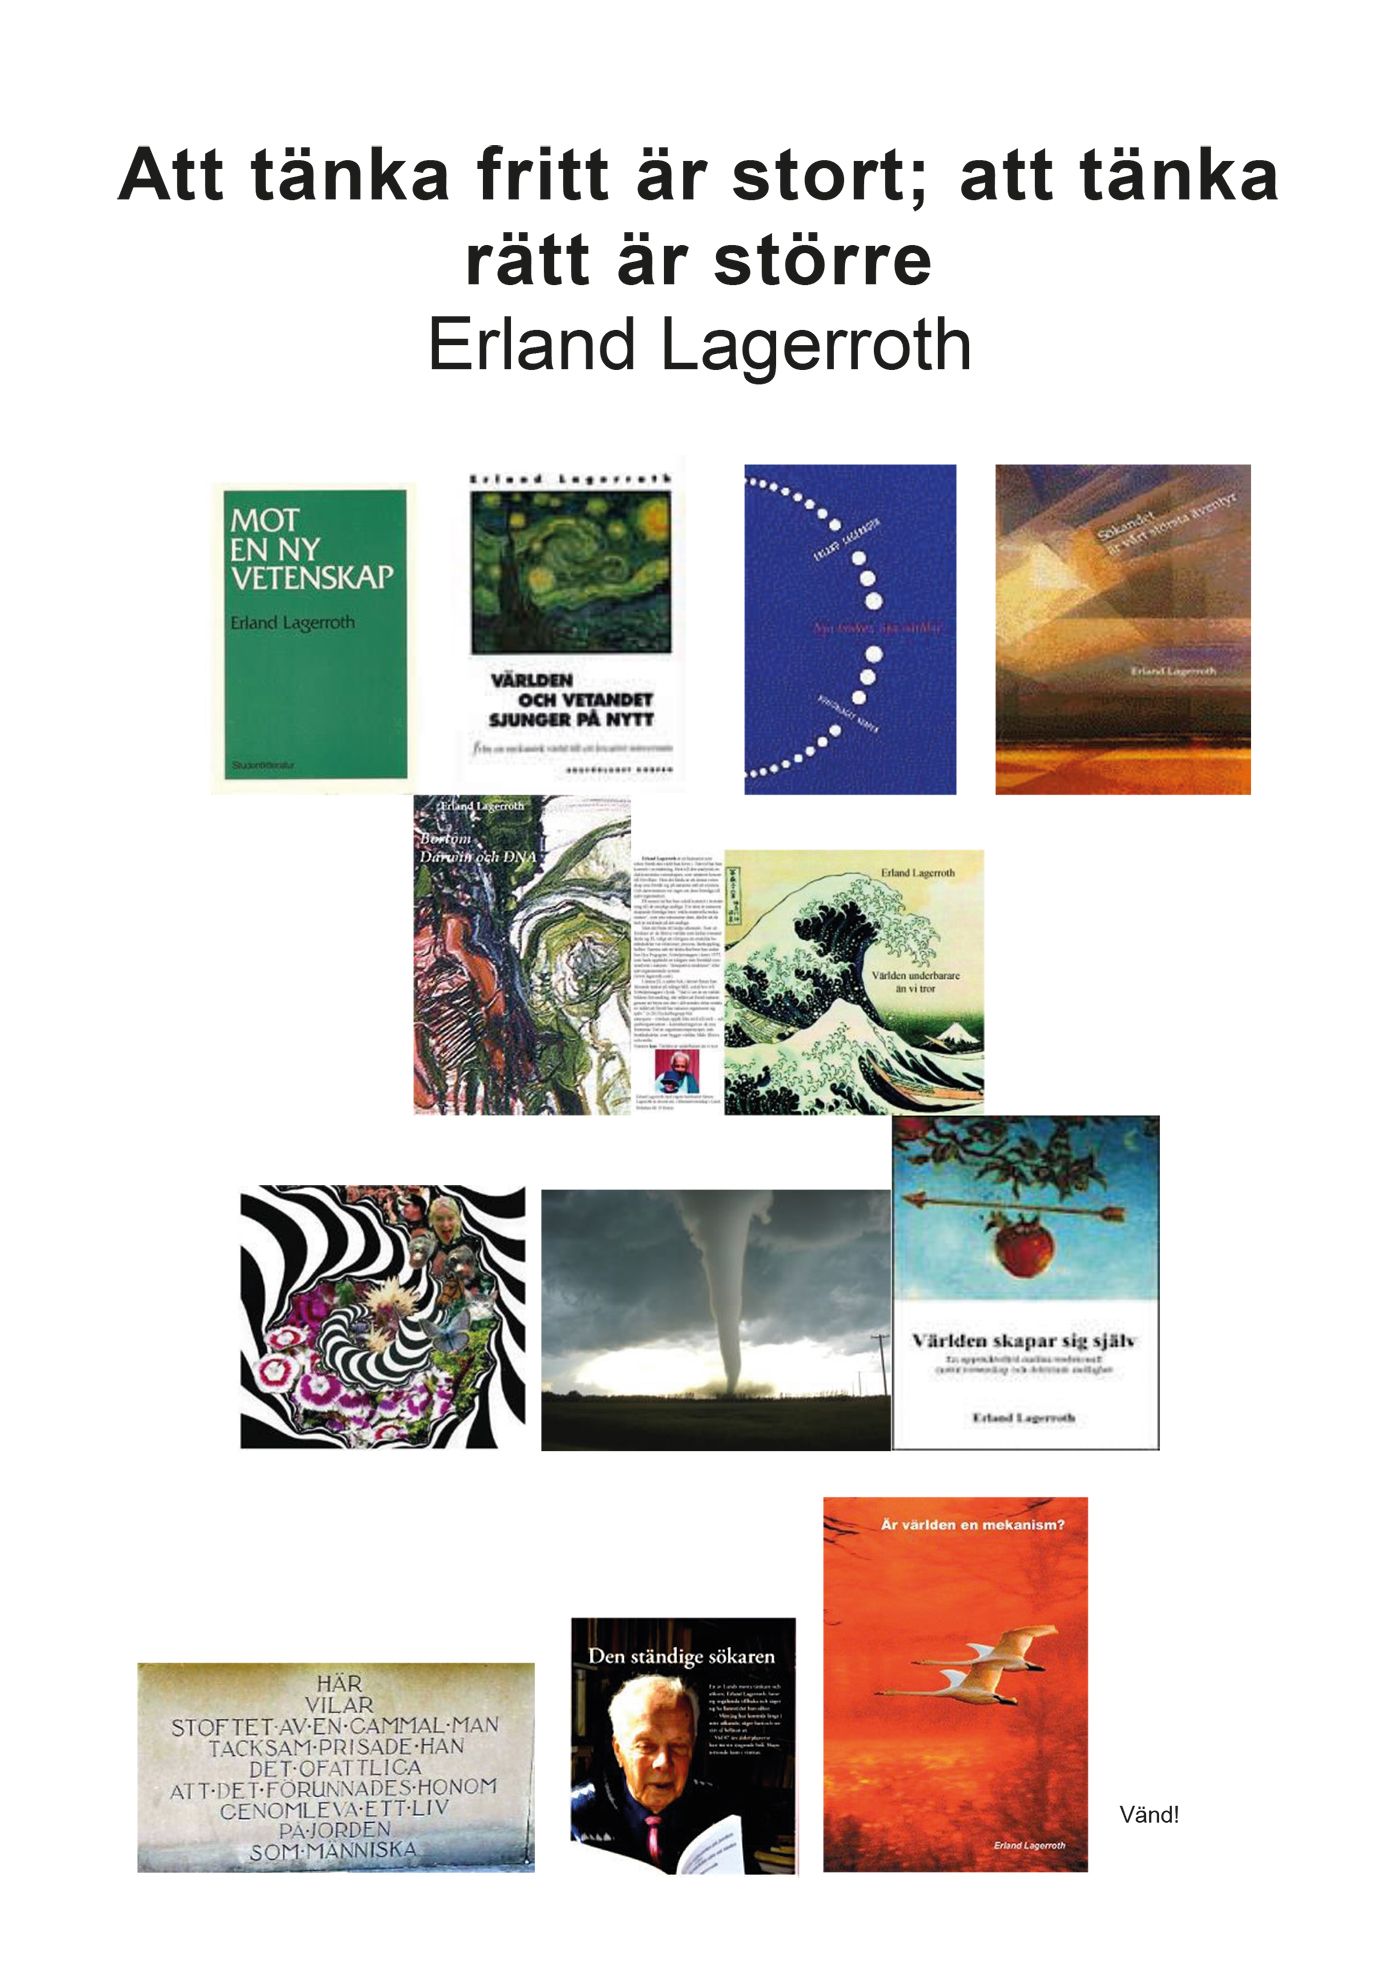 Att tänka fritt är stort; att tänka rätt är större, e-bok av Erland Lagerroth